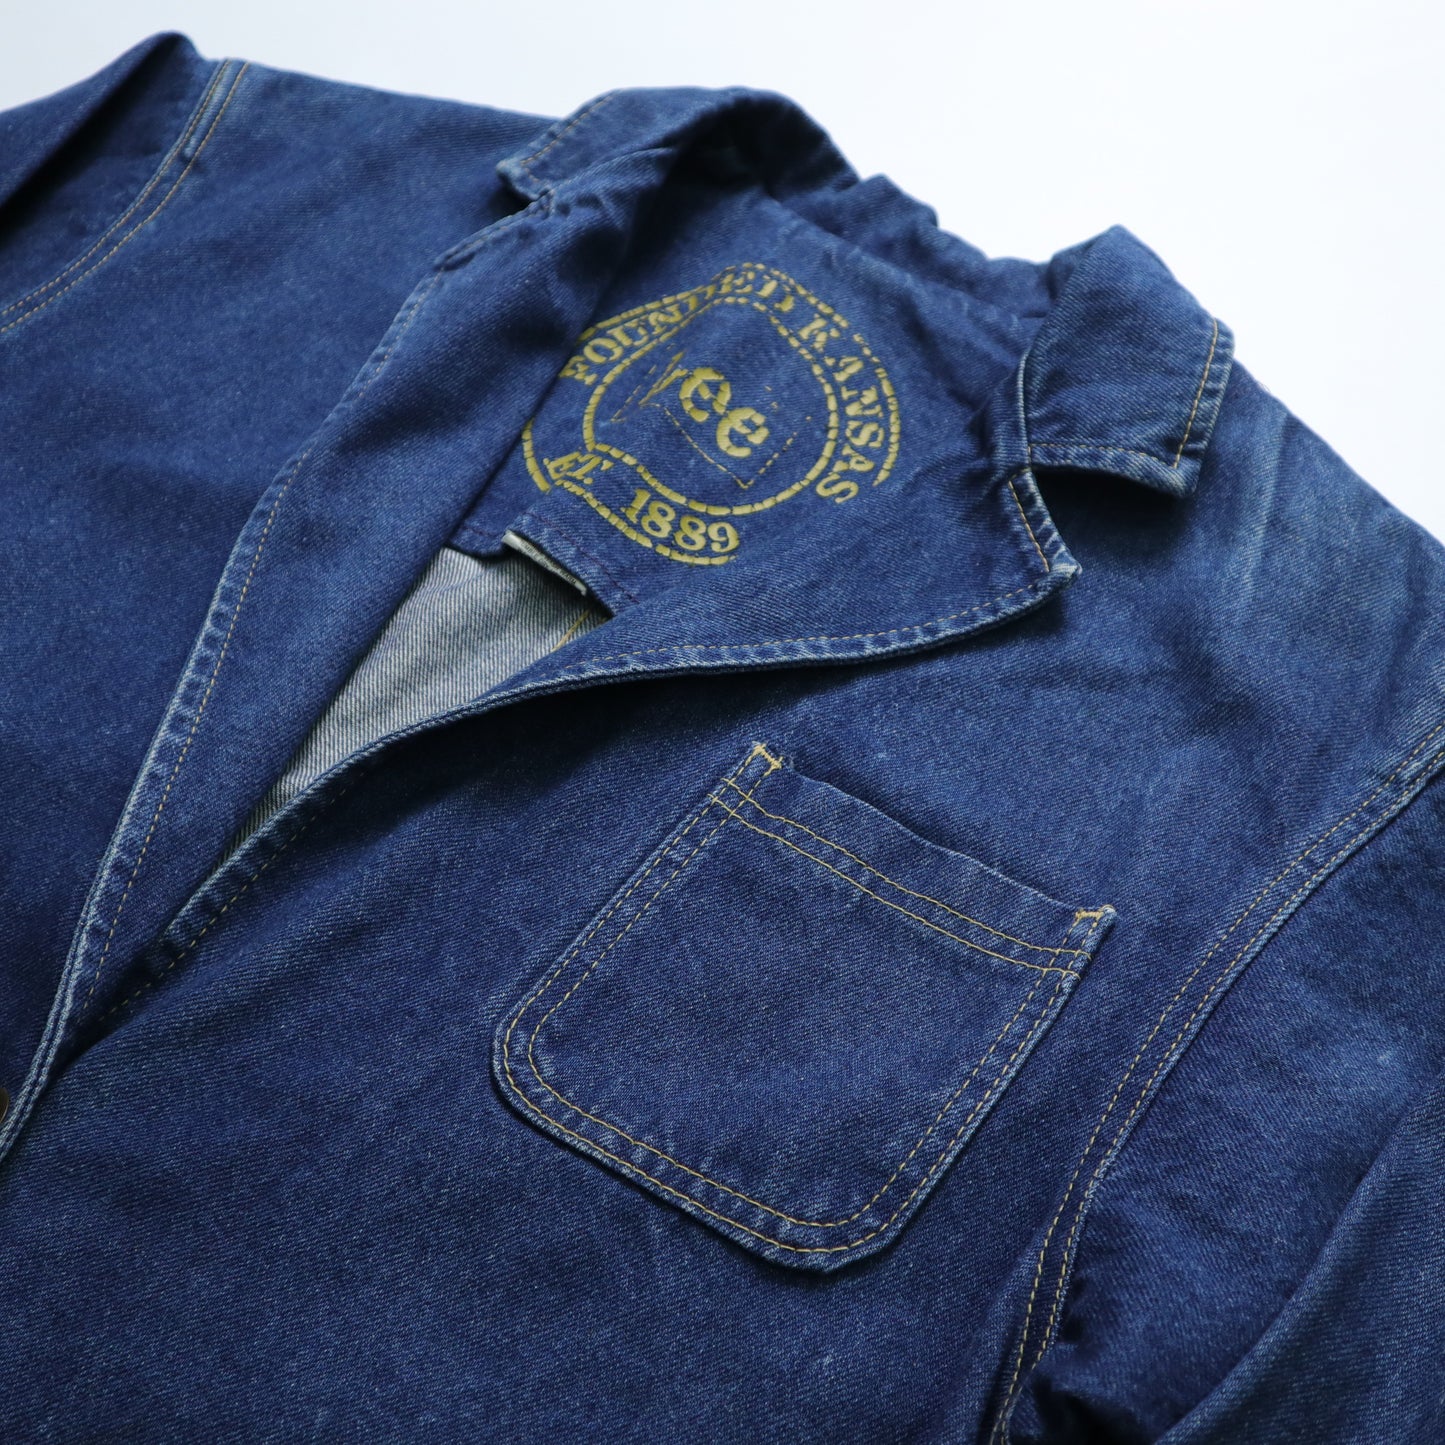 1980s LEE American-made dark denim jacket